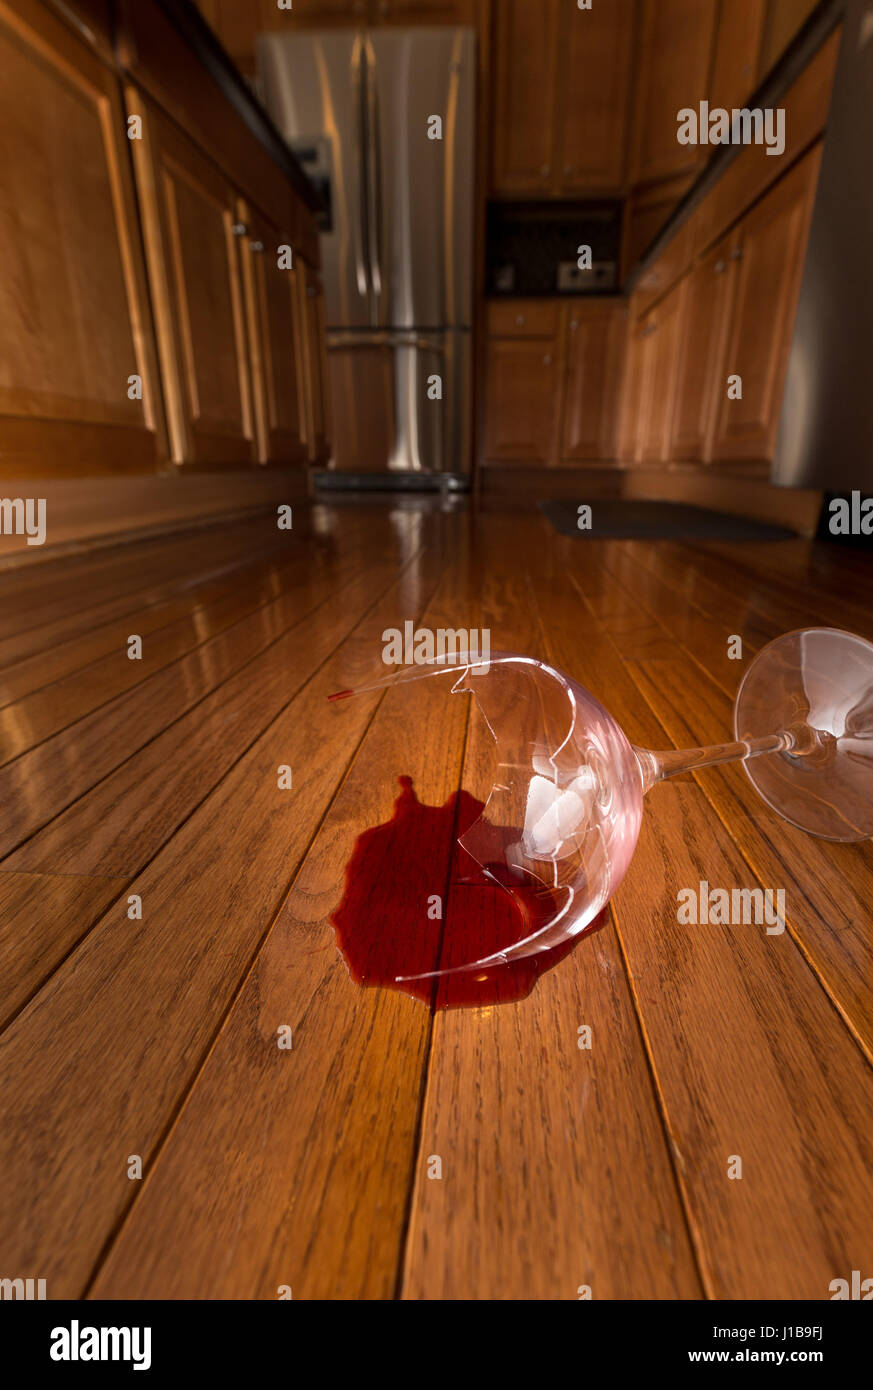 Gebrochene Glas Wein auf den Boden der modernen Küche - häusliche Gewalt Konzept Stockfoto